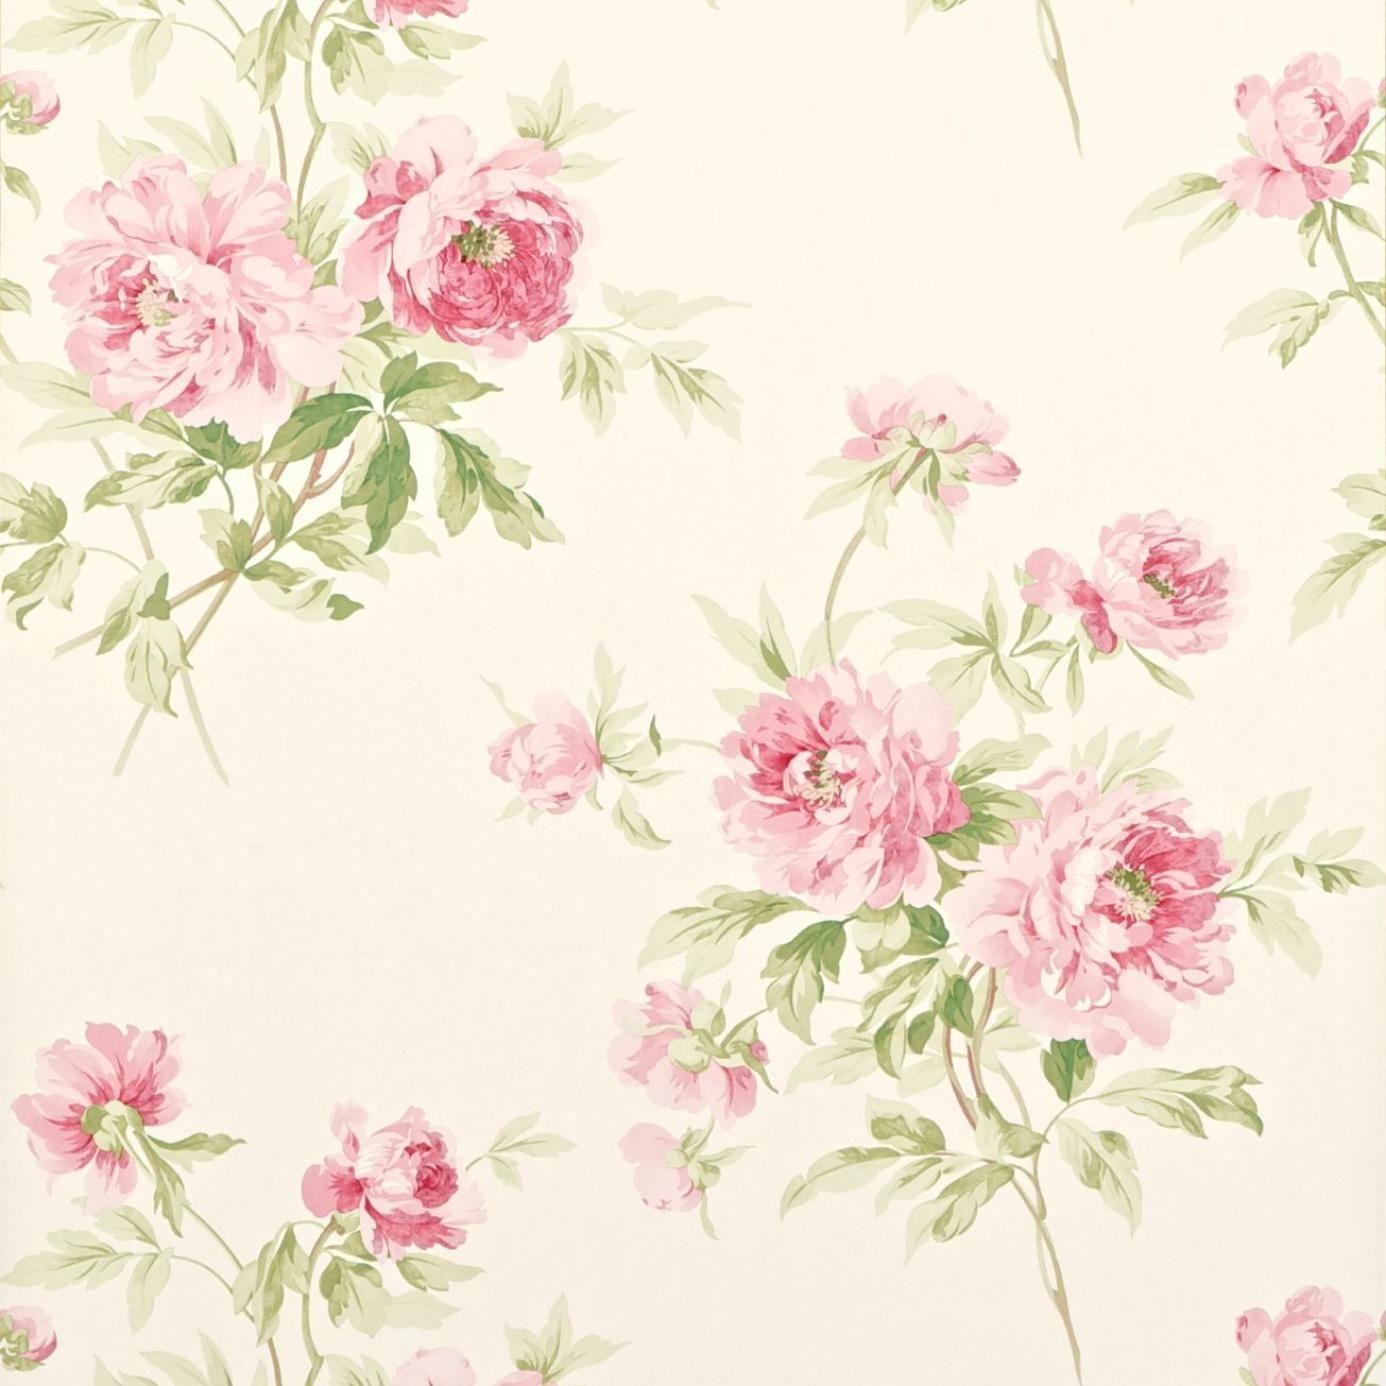 Hình nền Vintage Rose Backgrounds với hoa hồng cổ điển và nền trắng tinh khiết giúp cho màn hình của bạn trở nên đẹp mắt và lãng mạn hơn. Hãy tha hồ ngắm nhìn hình ảnh này và cảm nhận sự sống động và quý phái của hoa hồng cổ điển.